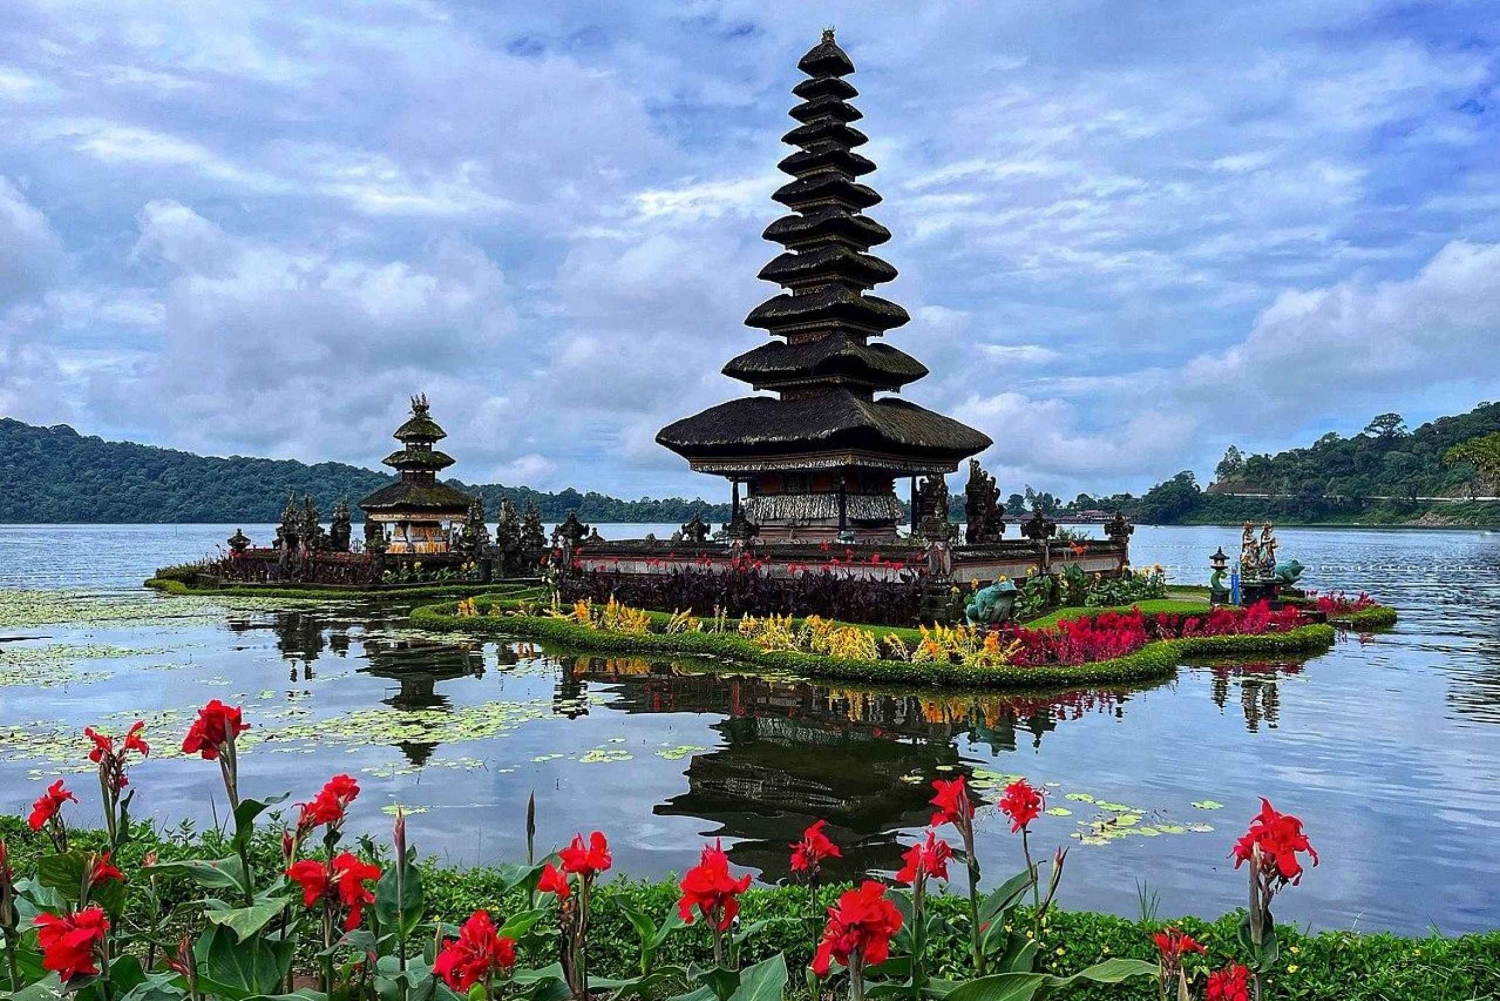 Bali : Jatiluwih Rice Terrace, Banyumala waterfall & Temple